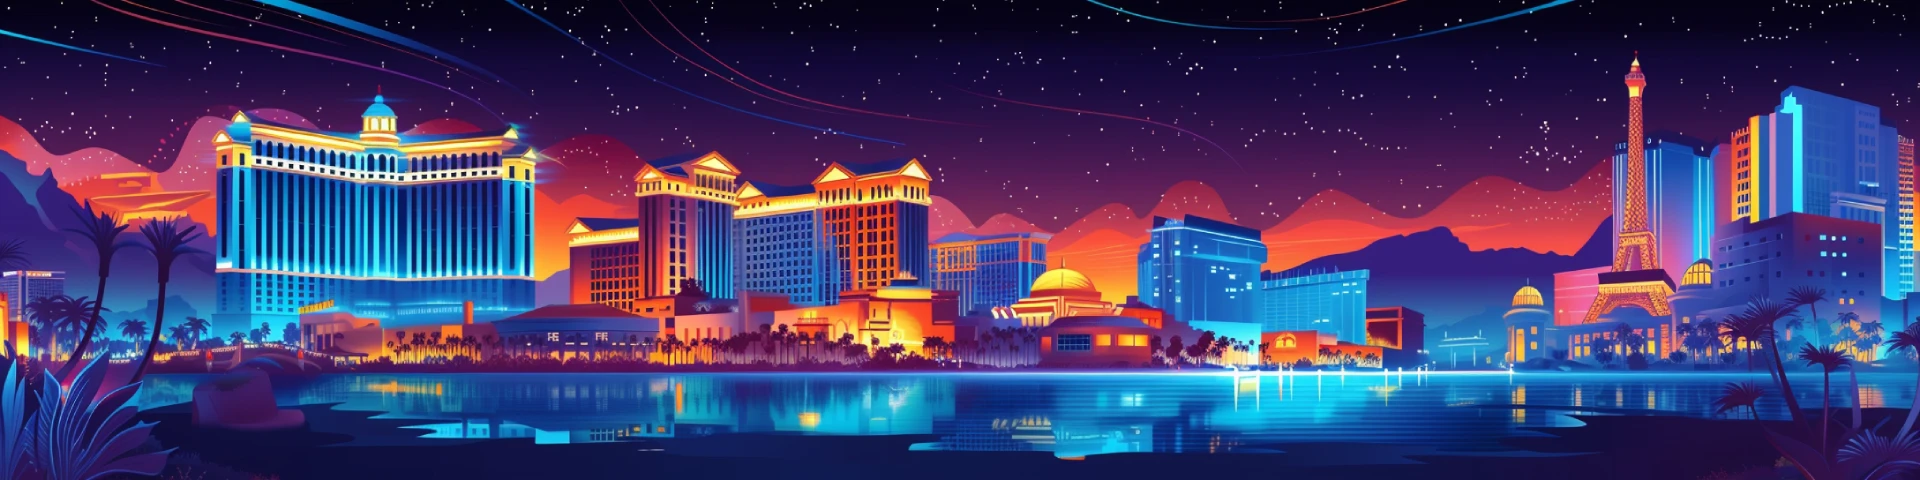 Banner of Arizona casino skyline